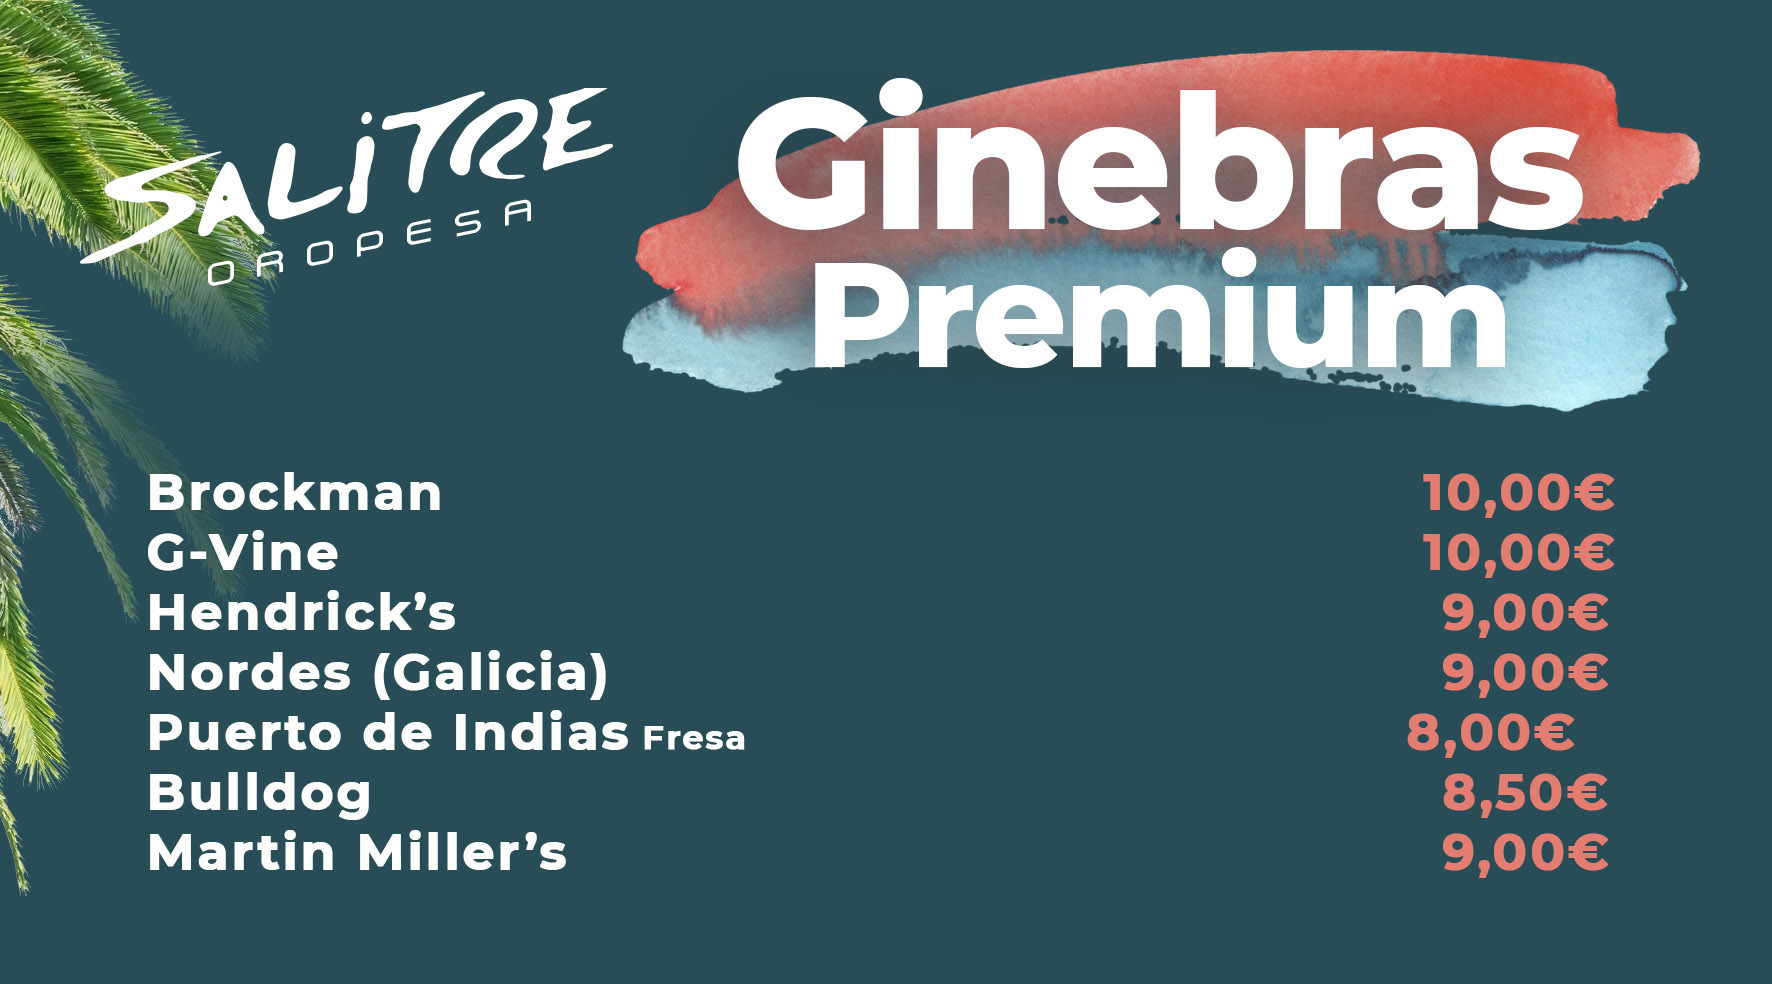 Ginebras Premium